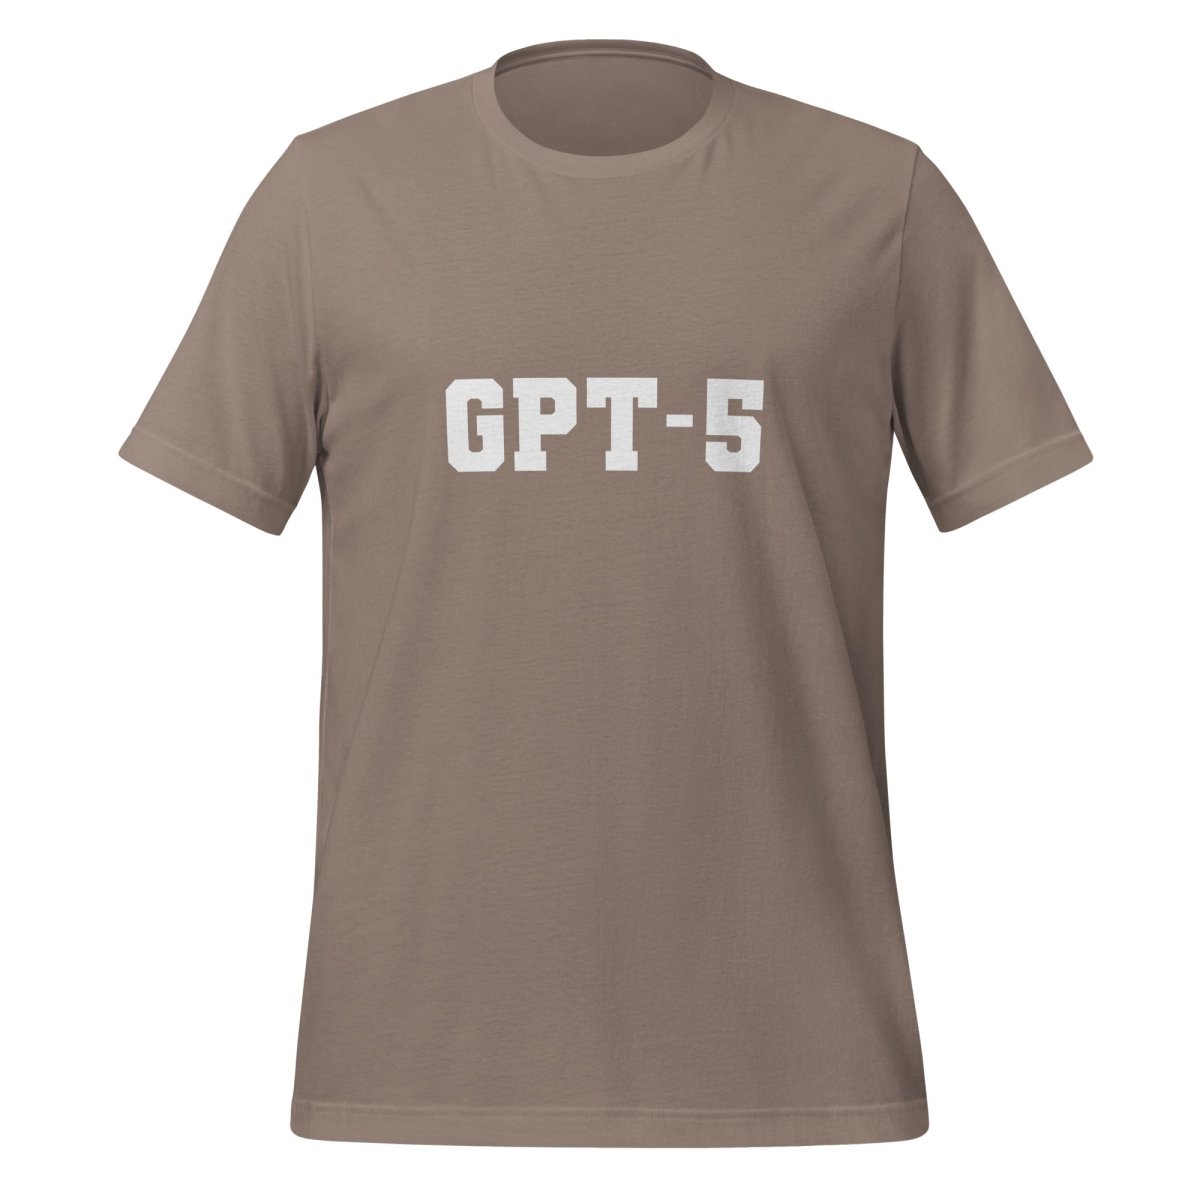 GPT - 5 T - Shirt 3 (unisex) - Pebble - AI Store